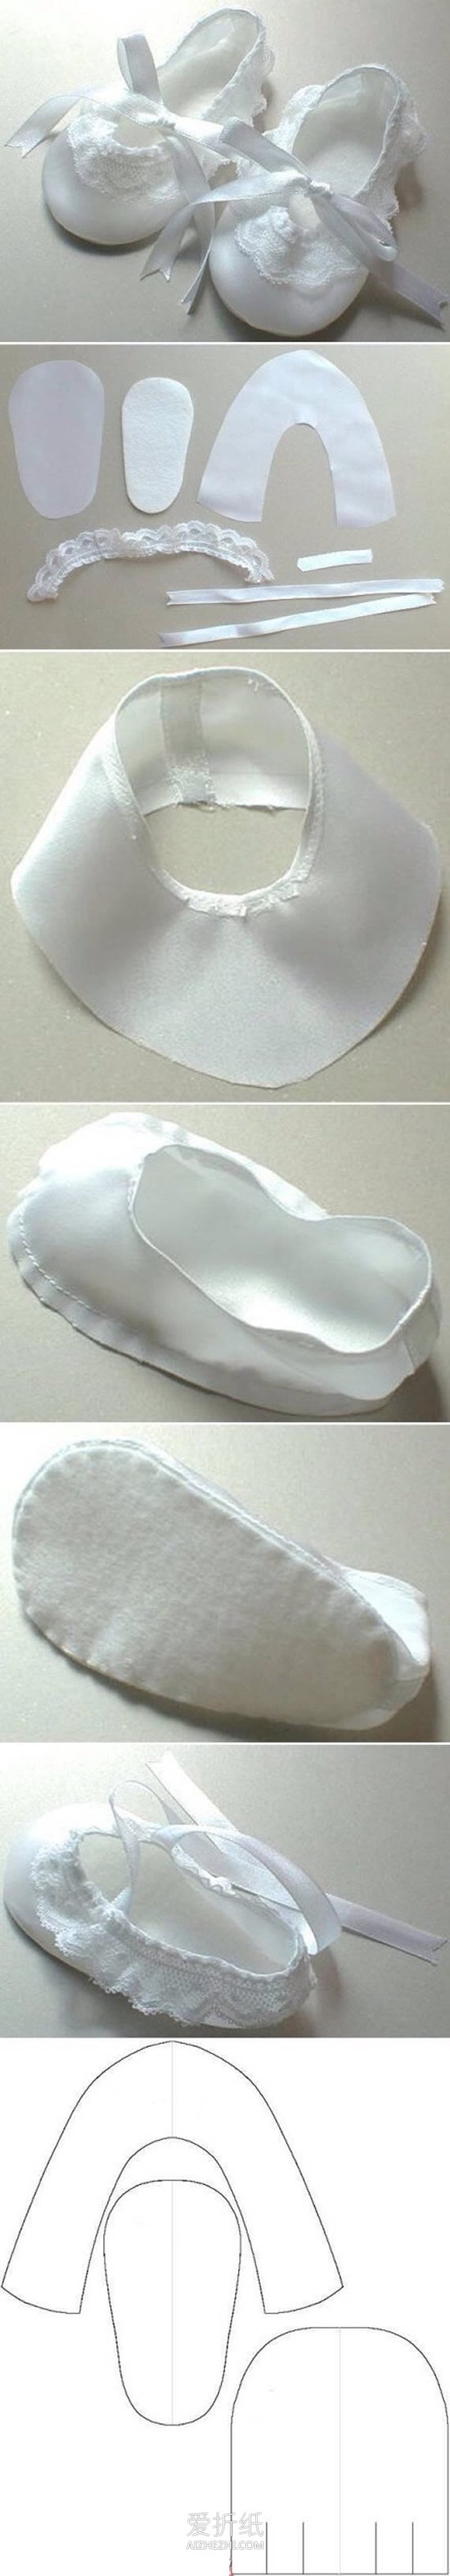 怎么做婴儿鞋的教程 9种宝宝布鞋的制作图纸- www.aizhezhi.com